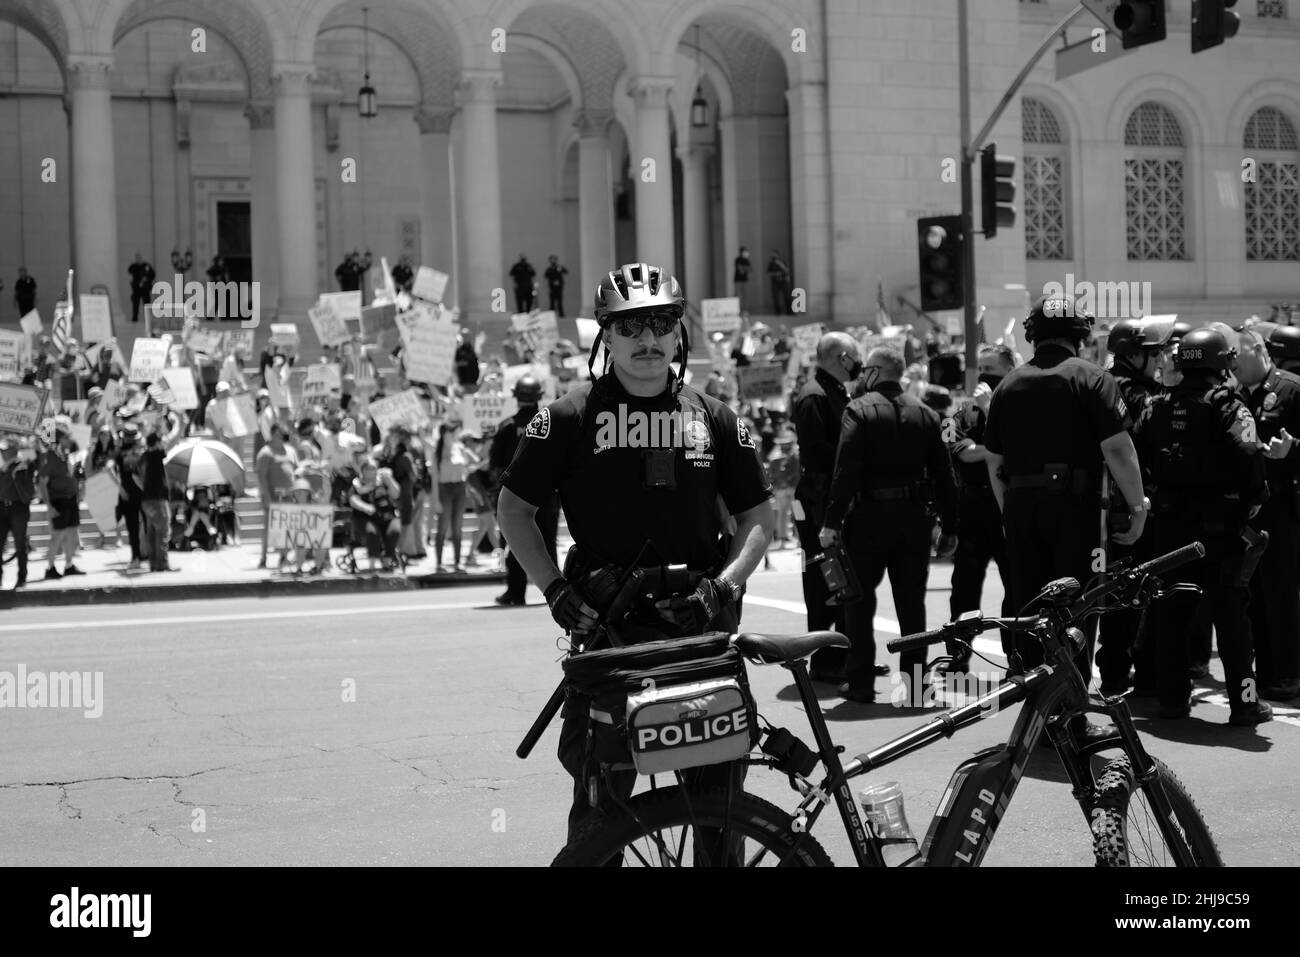 La protesta del Covid a Los Angeles tempi dispari nella storia del mondo con il Covid-19 la gente non è felice e la polizia è fuori in vigore Foto Stock